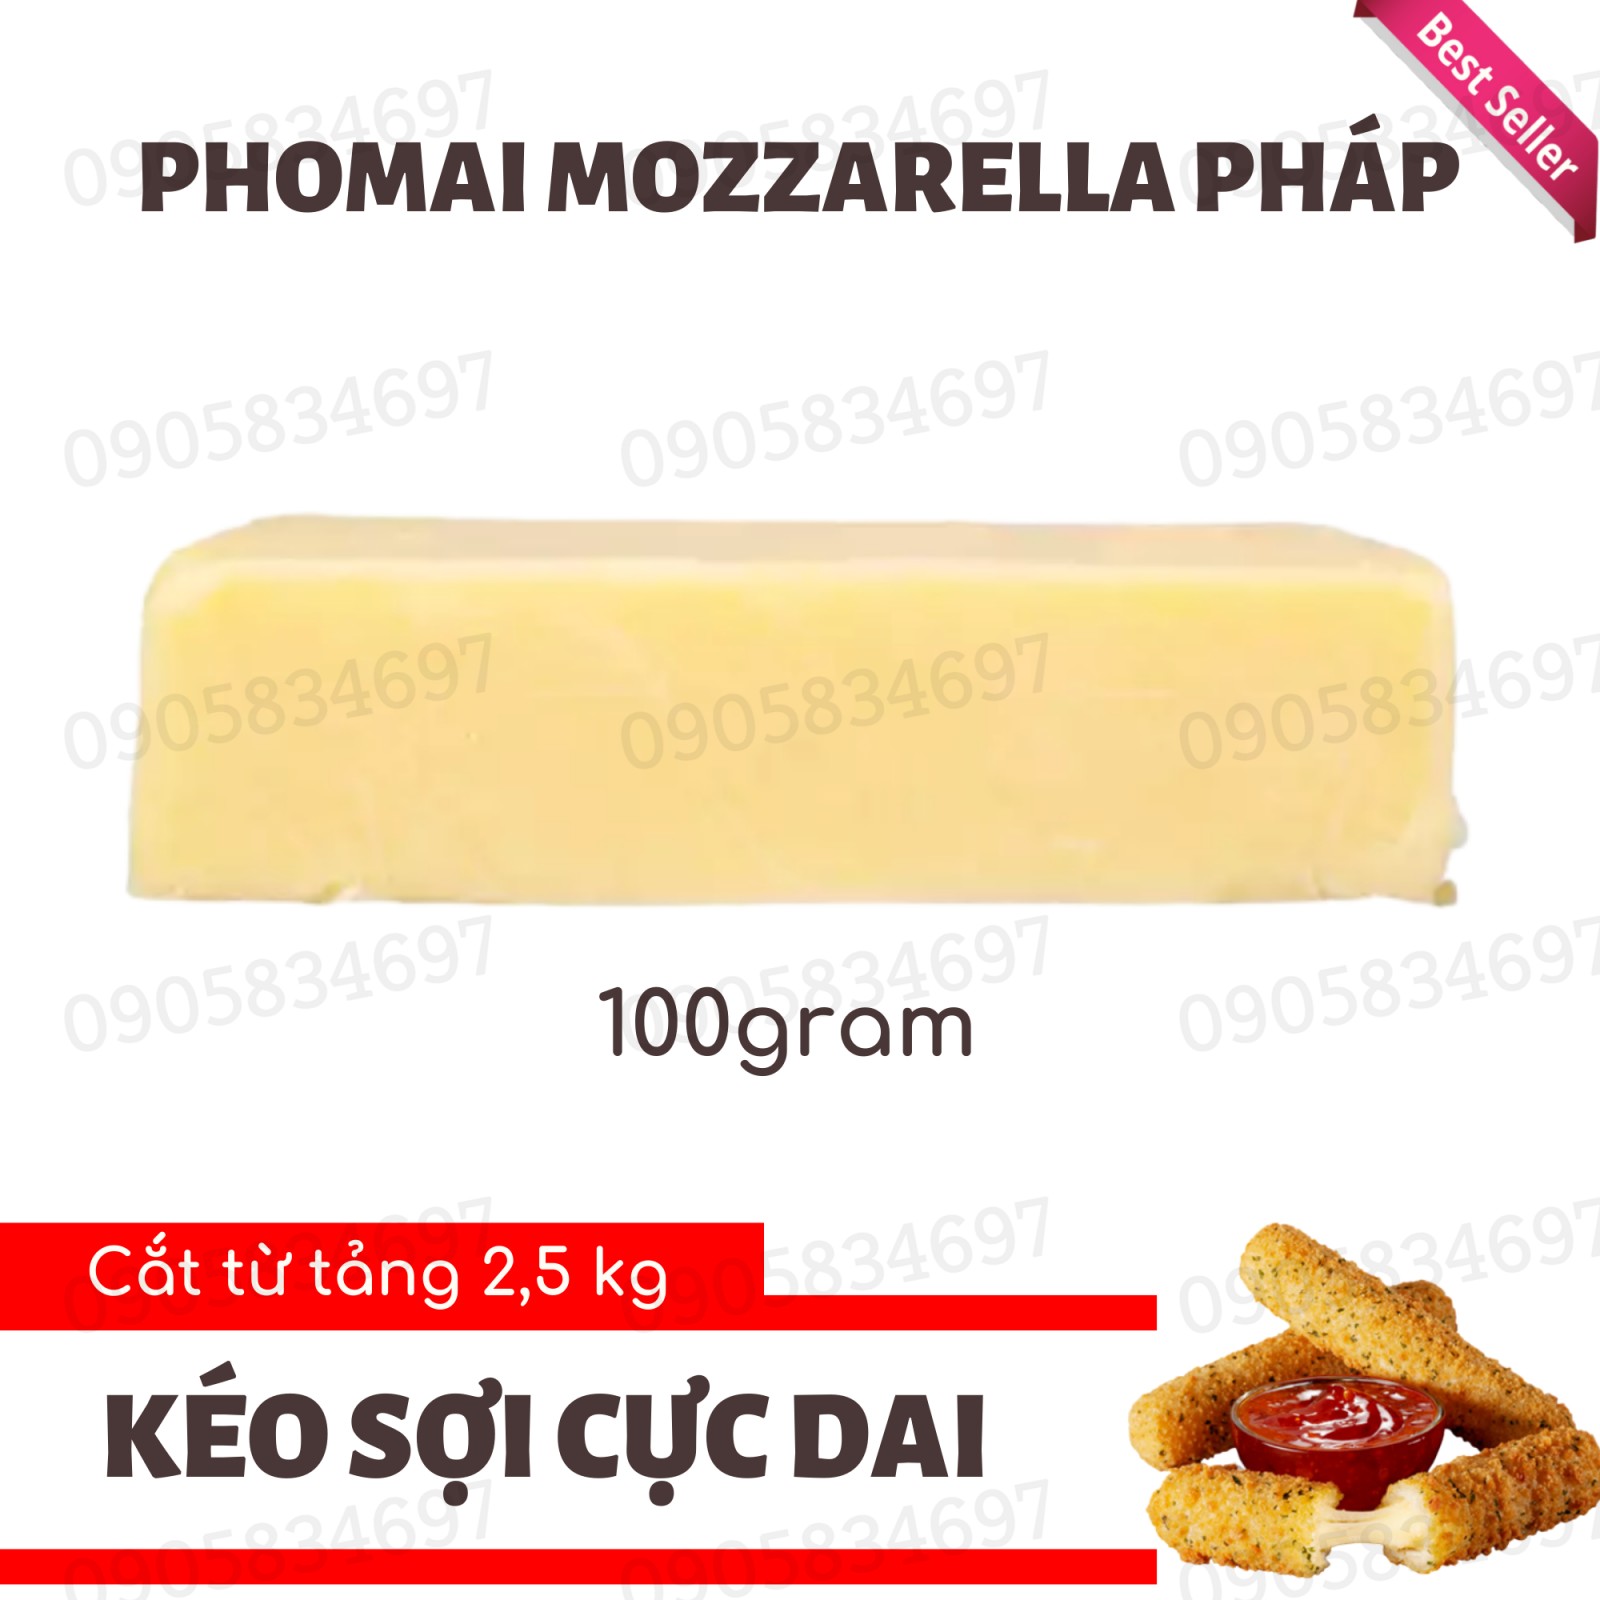 Phomai Mozzarella Maestrella Pháp - Cắt Sẵn Khối 100gr, Nấu Phủ Tokbokki